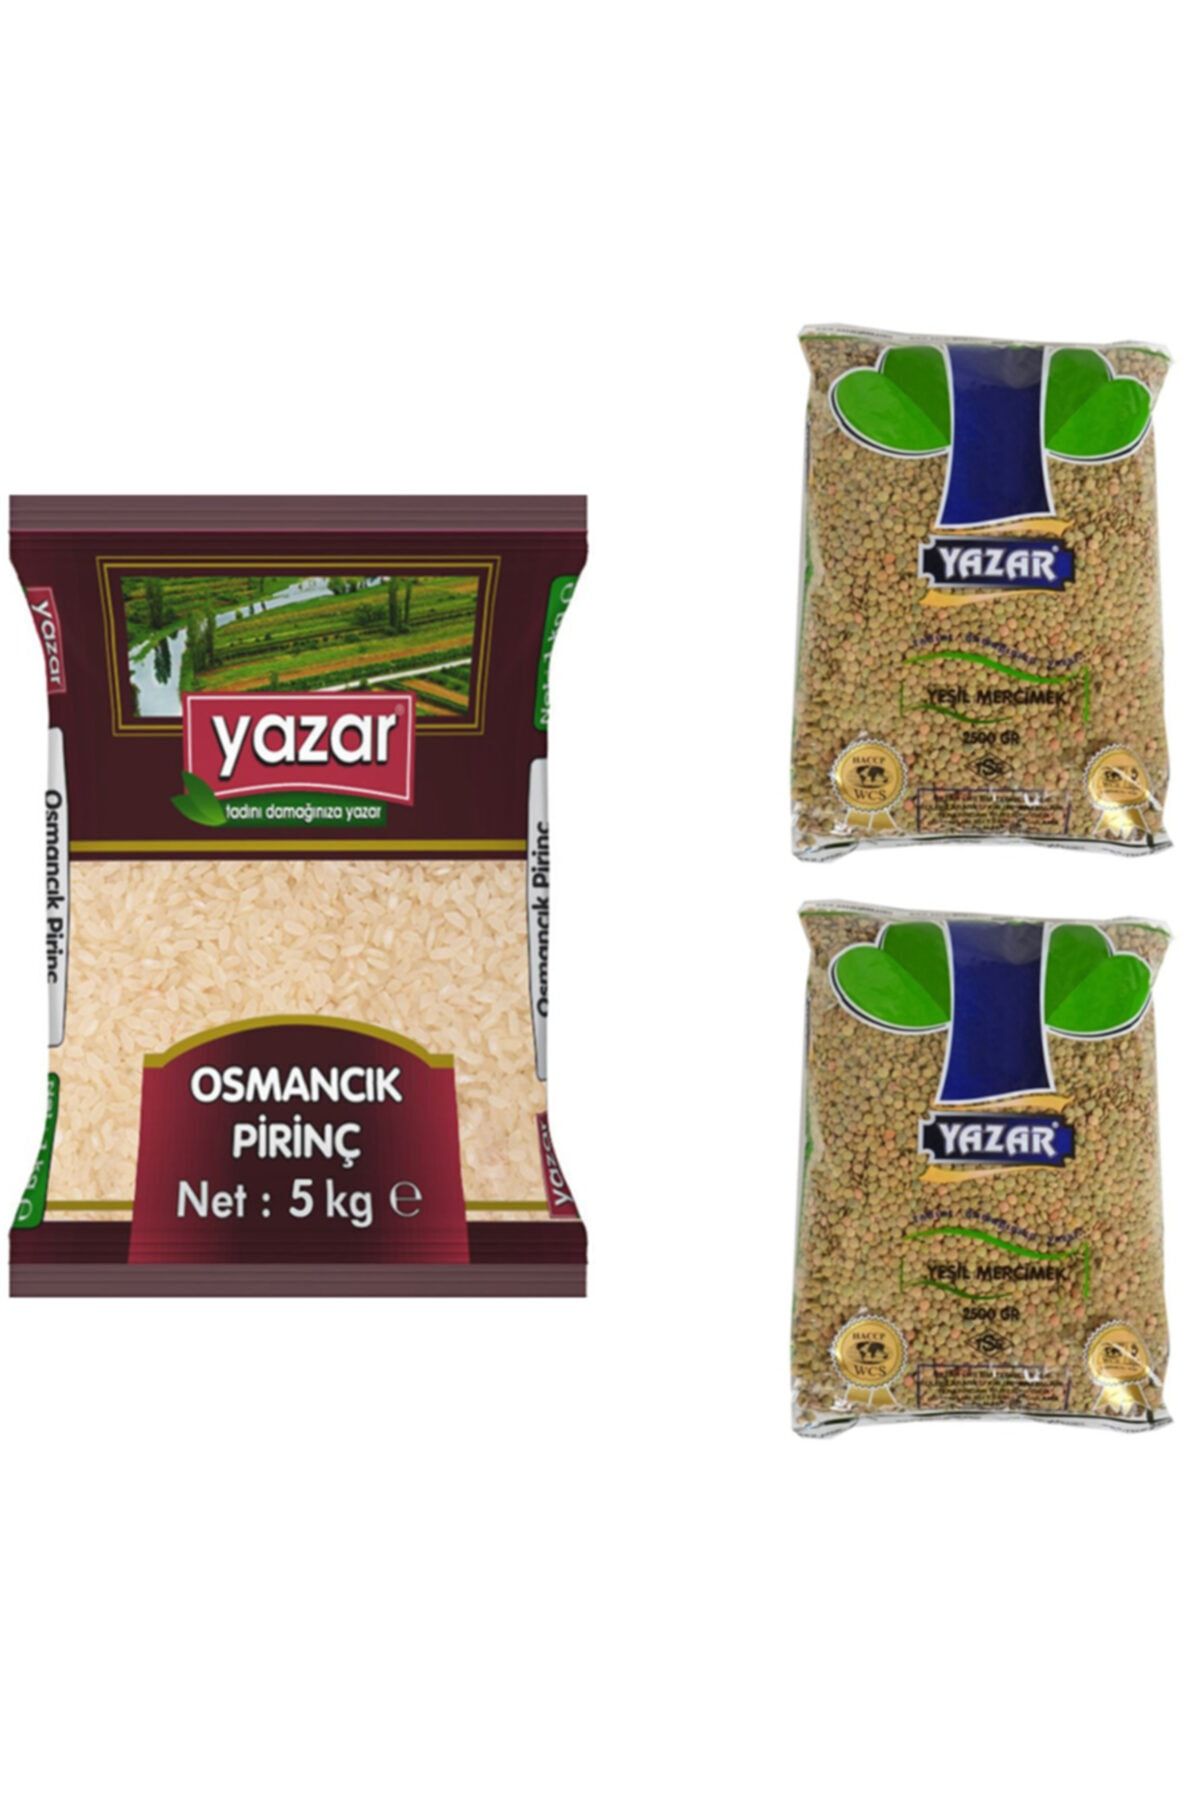 YAZAR Kumanya Gıda Ziyafet Paketi 5 Kg. Osmancık Pirinç + 5 Kg. Yeşil Mercimek 2'li